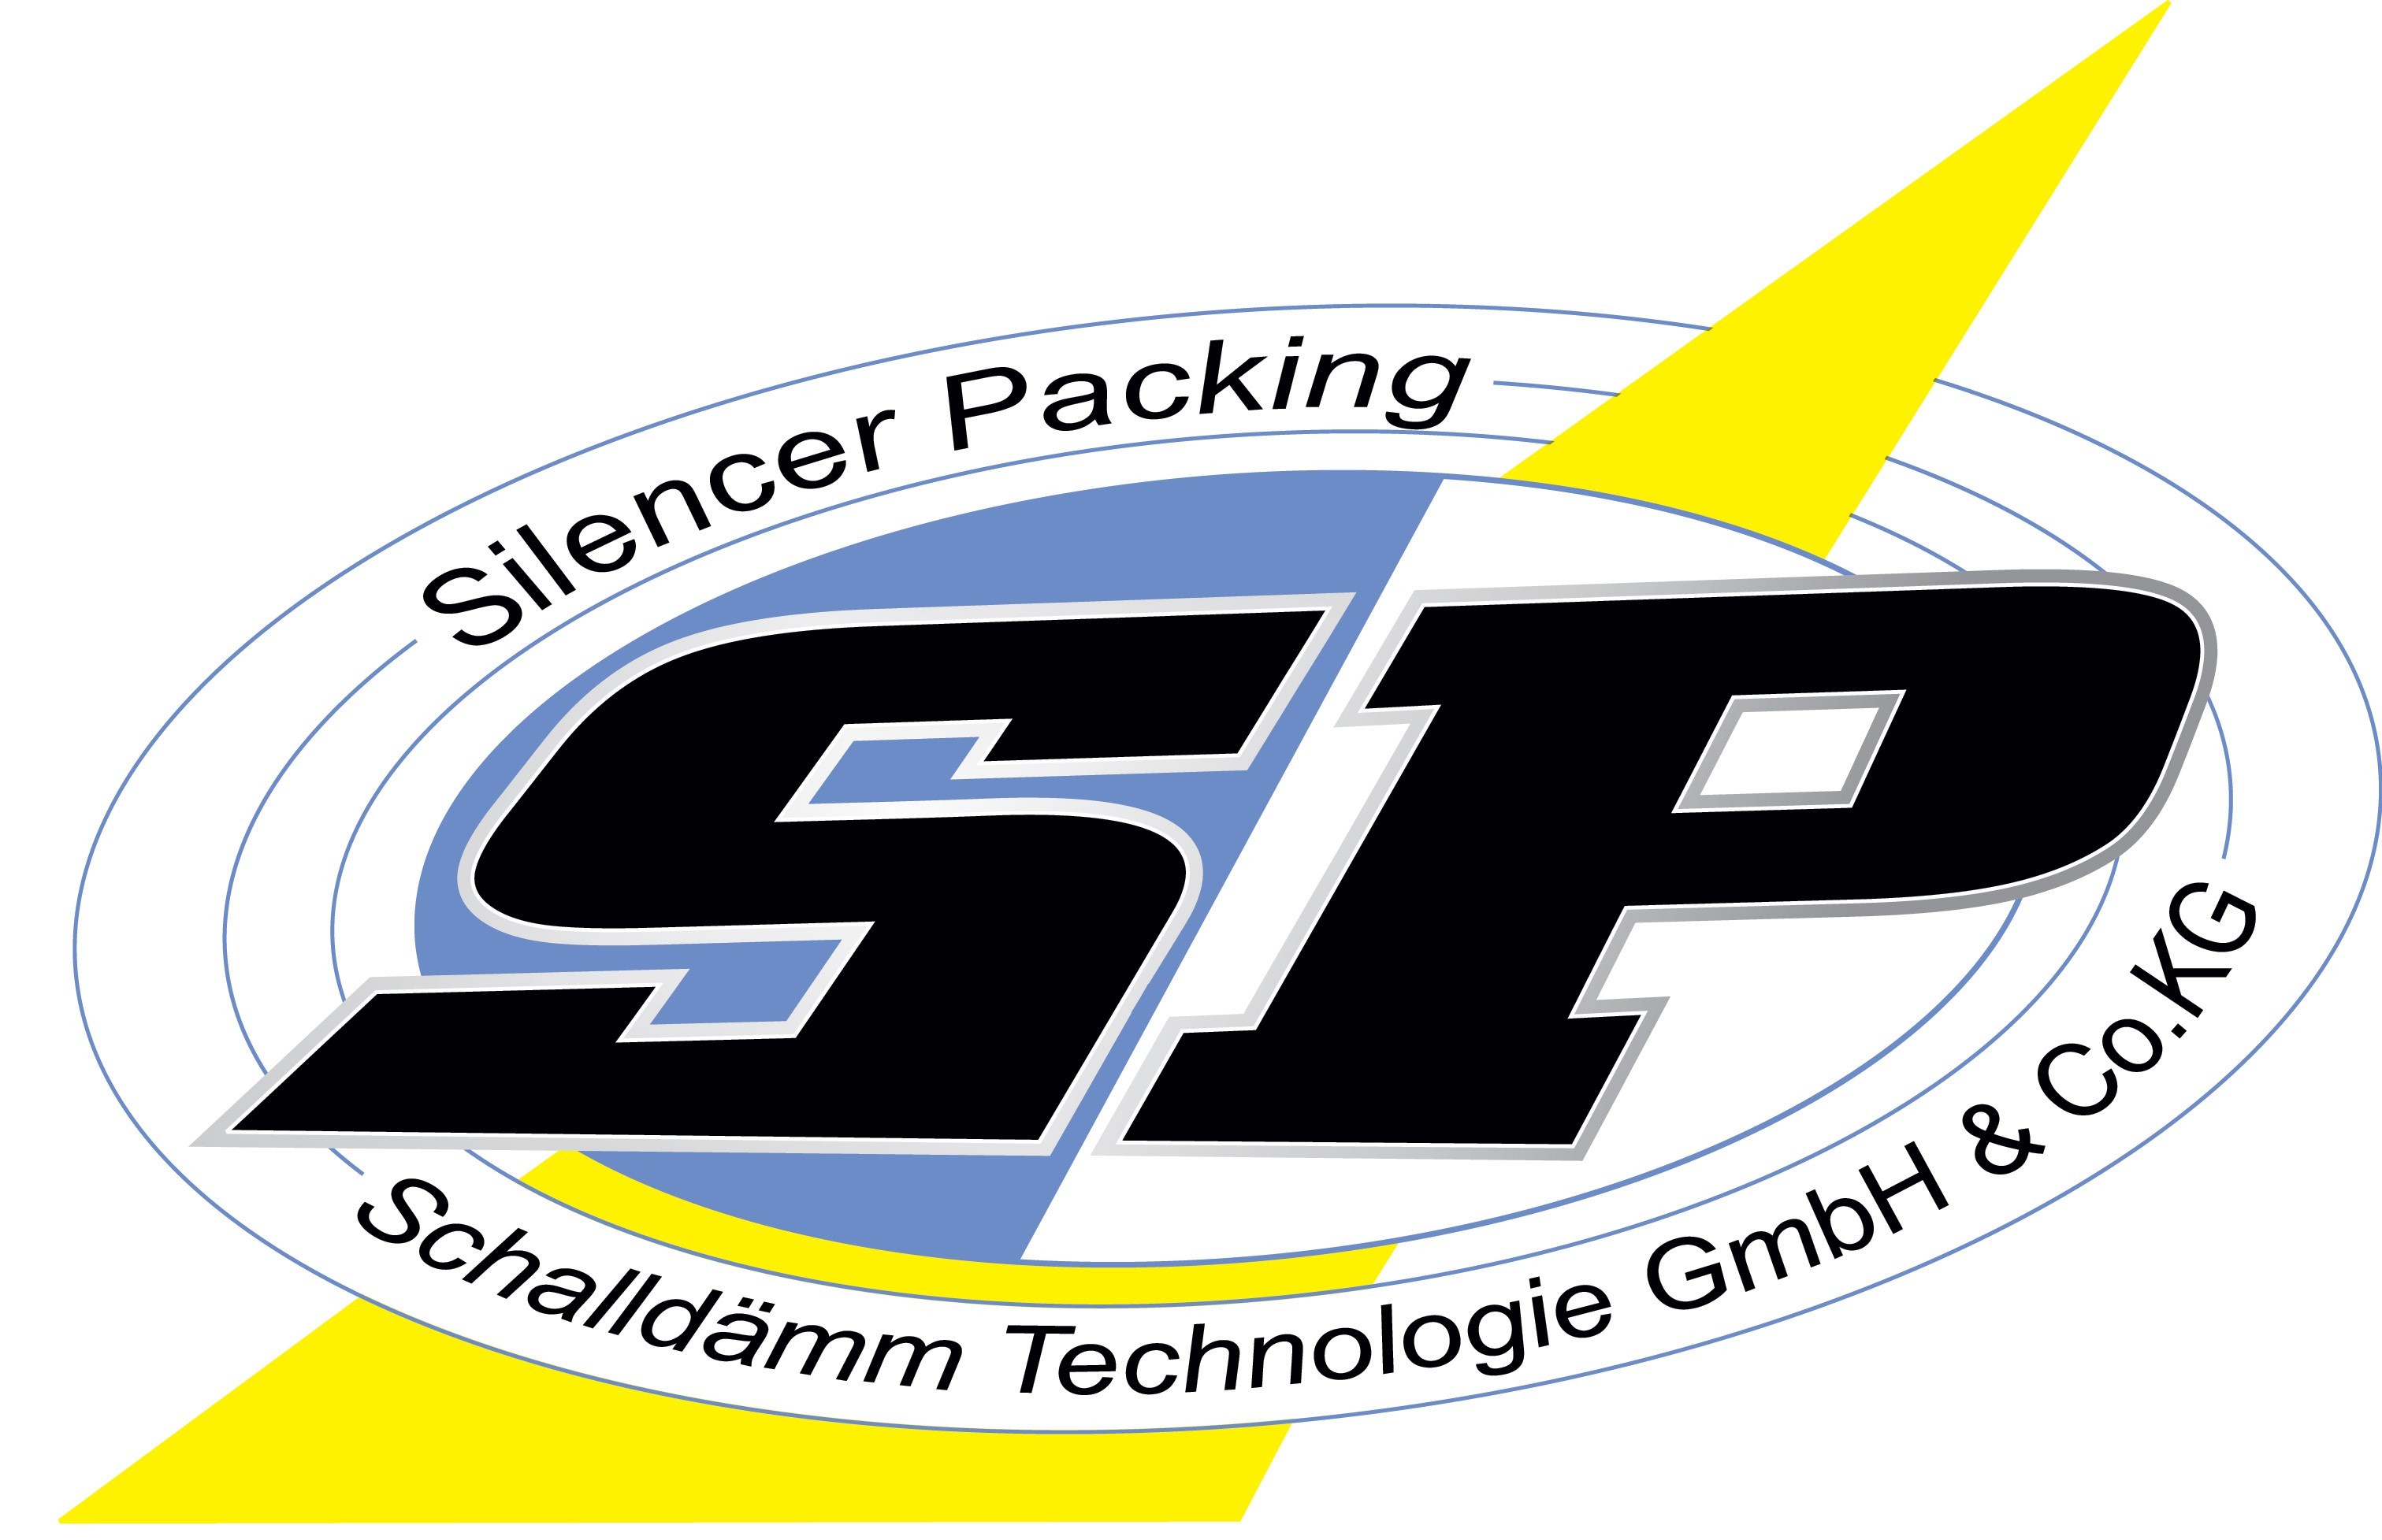 SP_Schalldaemm_Technologie_Logo_JPG